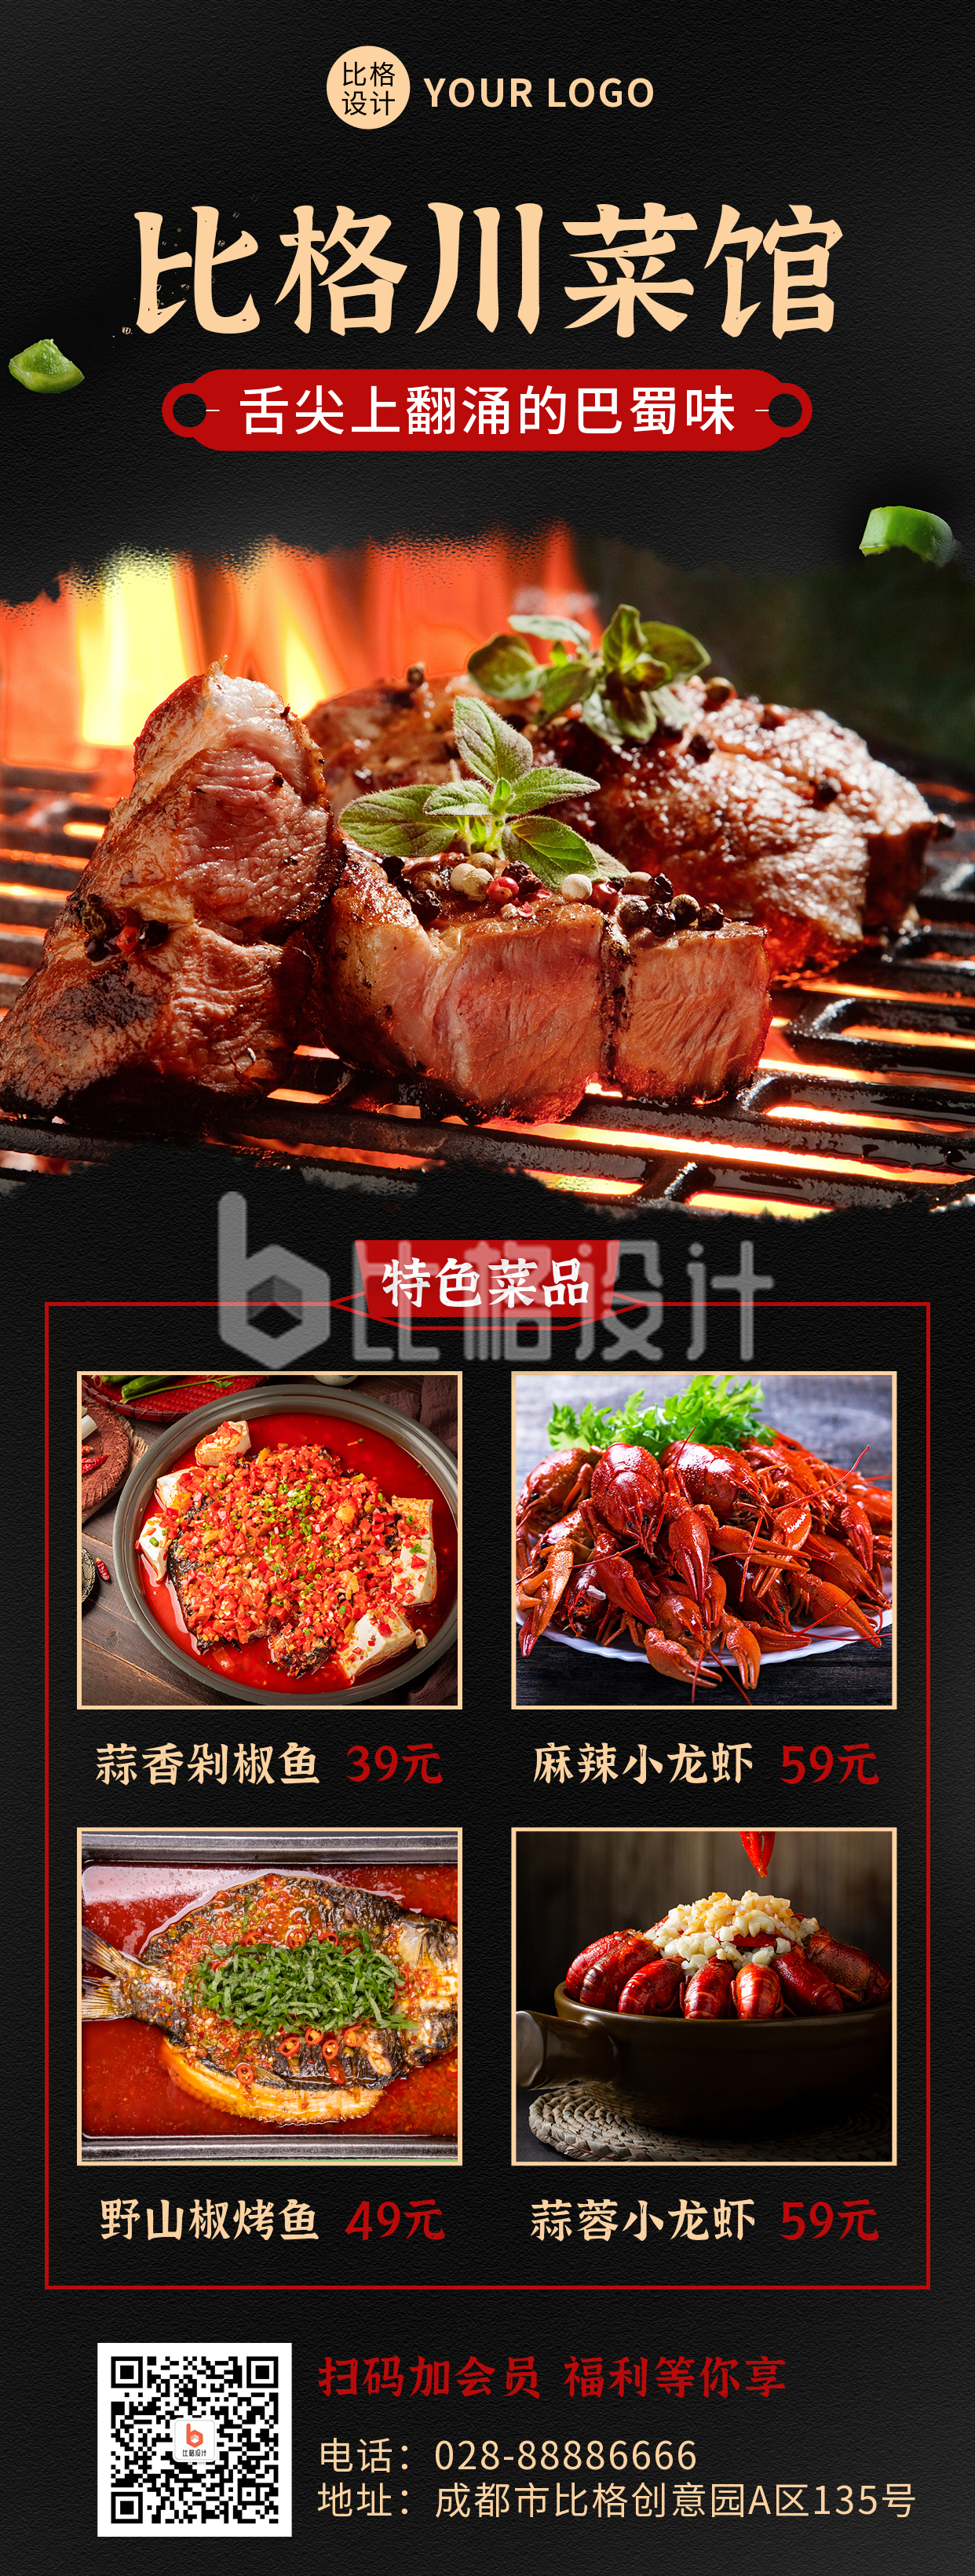 红黑色系川菜菜品展示长图海报